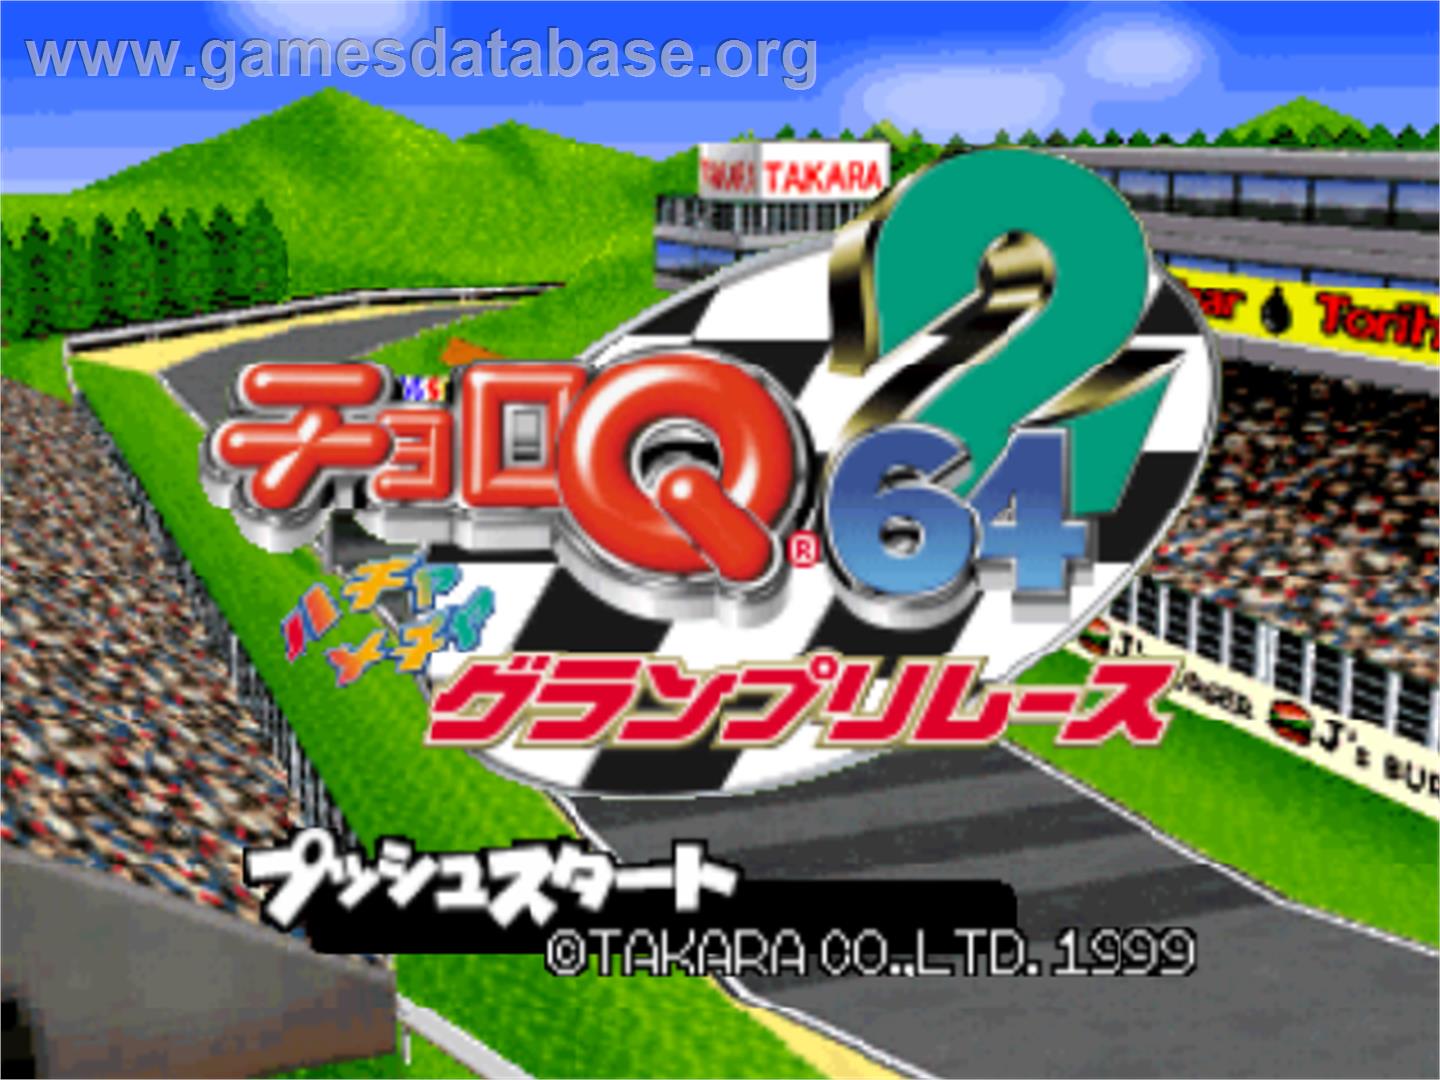 Choro Q 64 II: Hacha Mecha Grand Prix Race - Nintendo N64 - Artwork - Title Screen